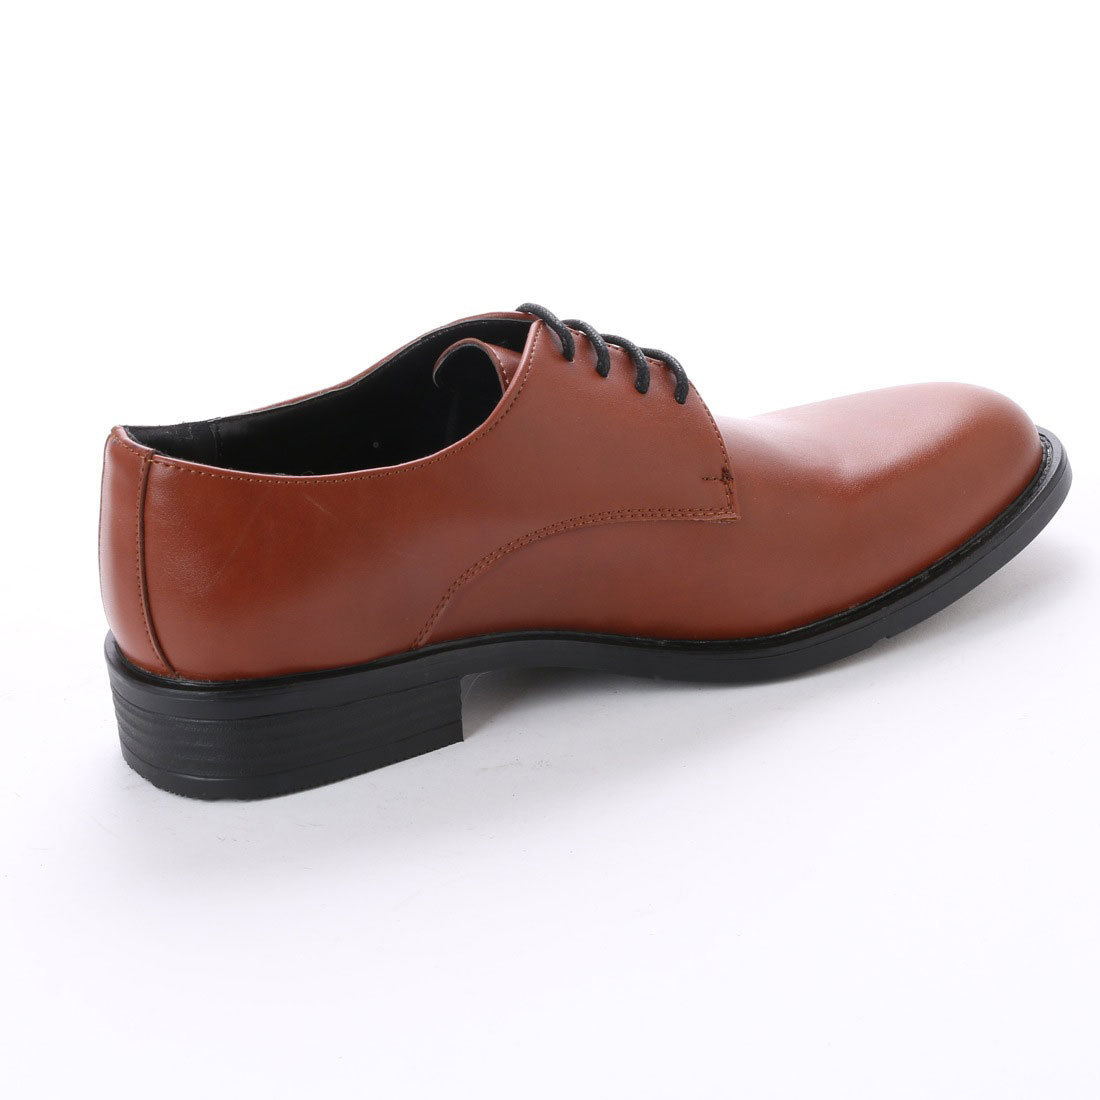 16121 アウトレット ビジネスシューズ 25.5cm ブラウン レースアップ メンズ 紳士靴